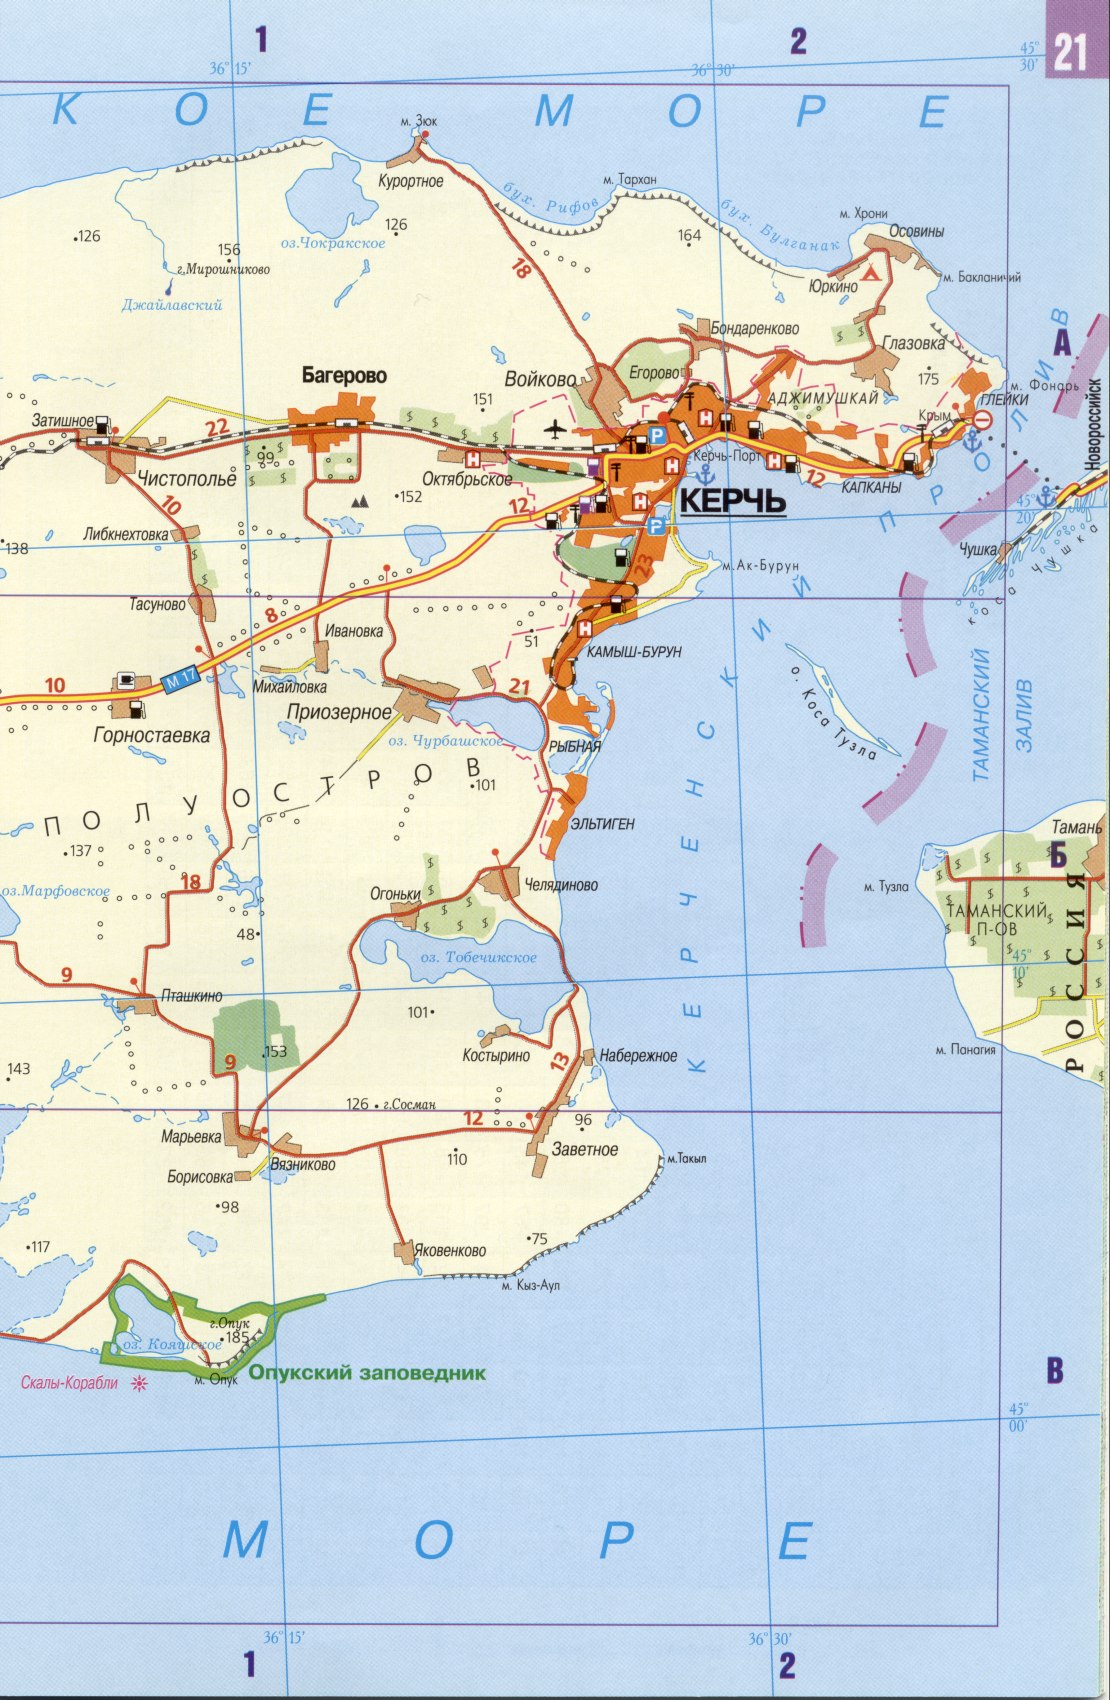 Карта Керченского полуострова. Подробная карта автомобильных дорог - Керченский полуостров, B0 - 